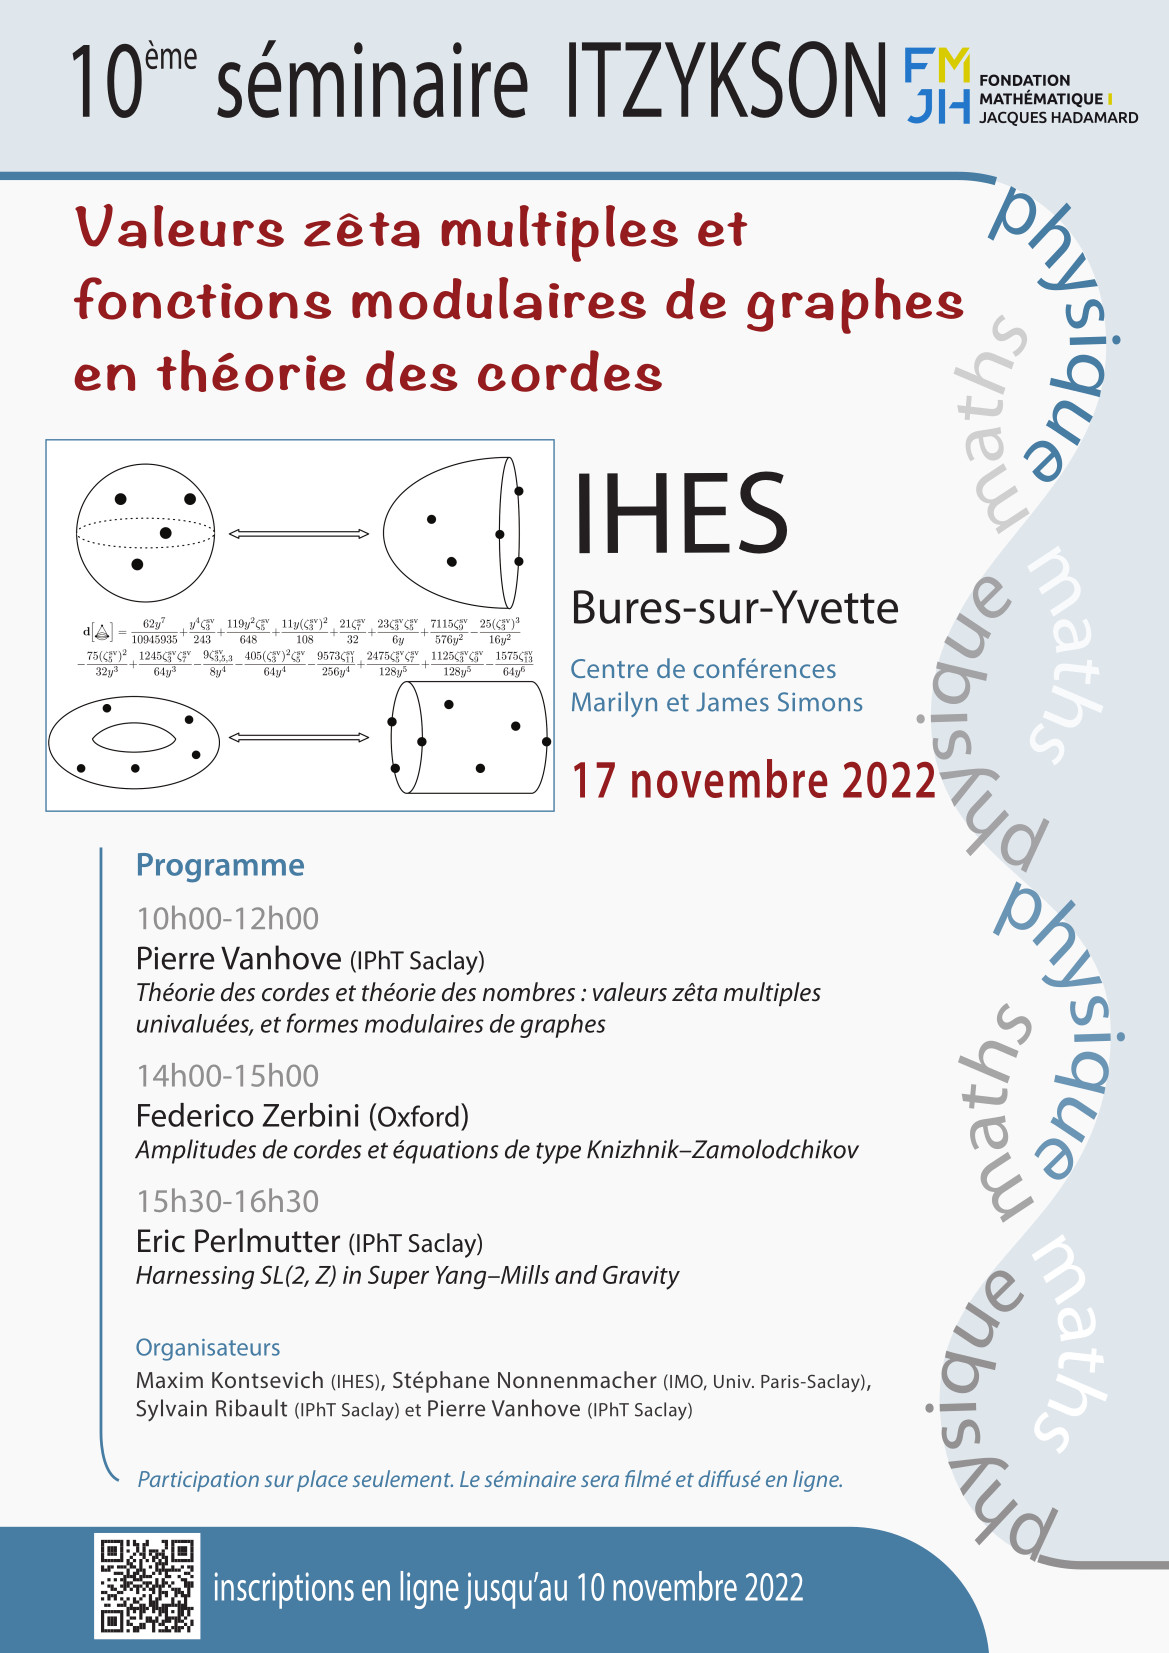 Le 10ème séminaire Itzykson : Valeurs zêta multiples et fonctions modulaires de graphes en théorie des cordes.